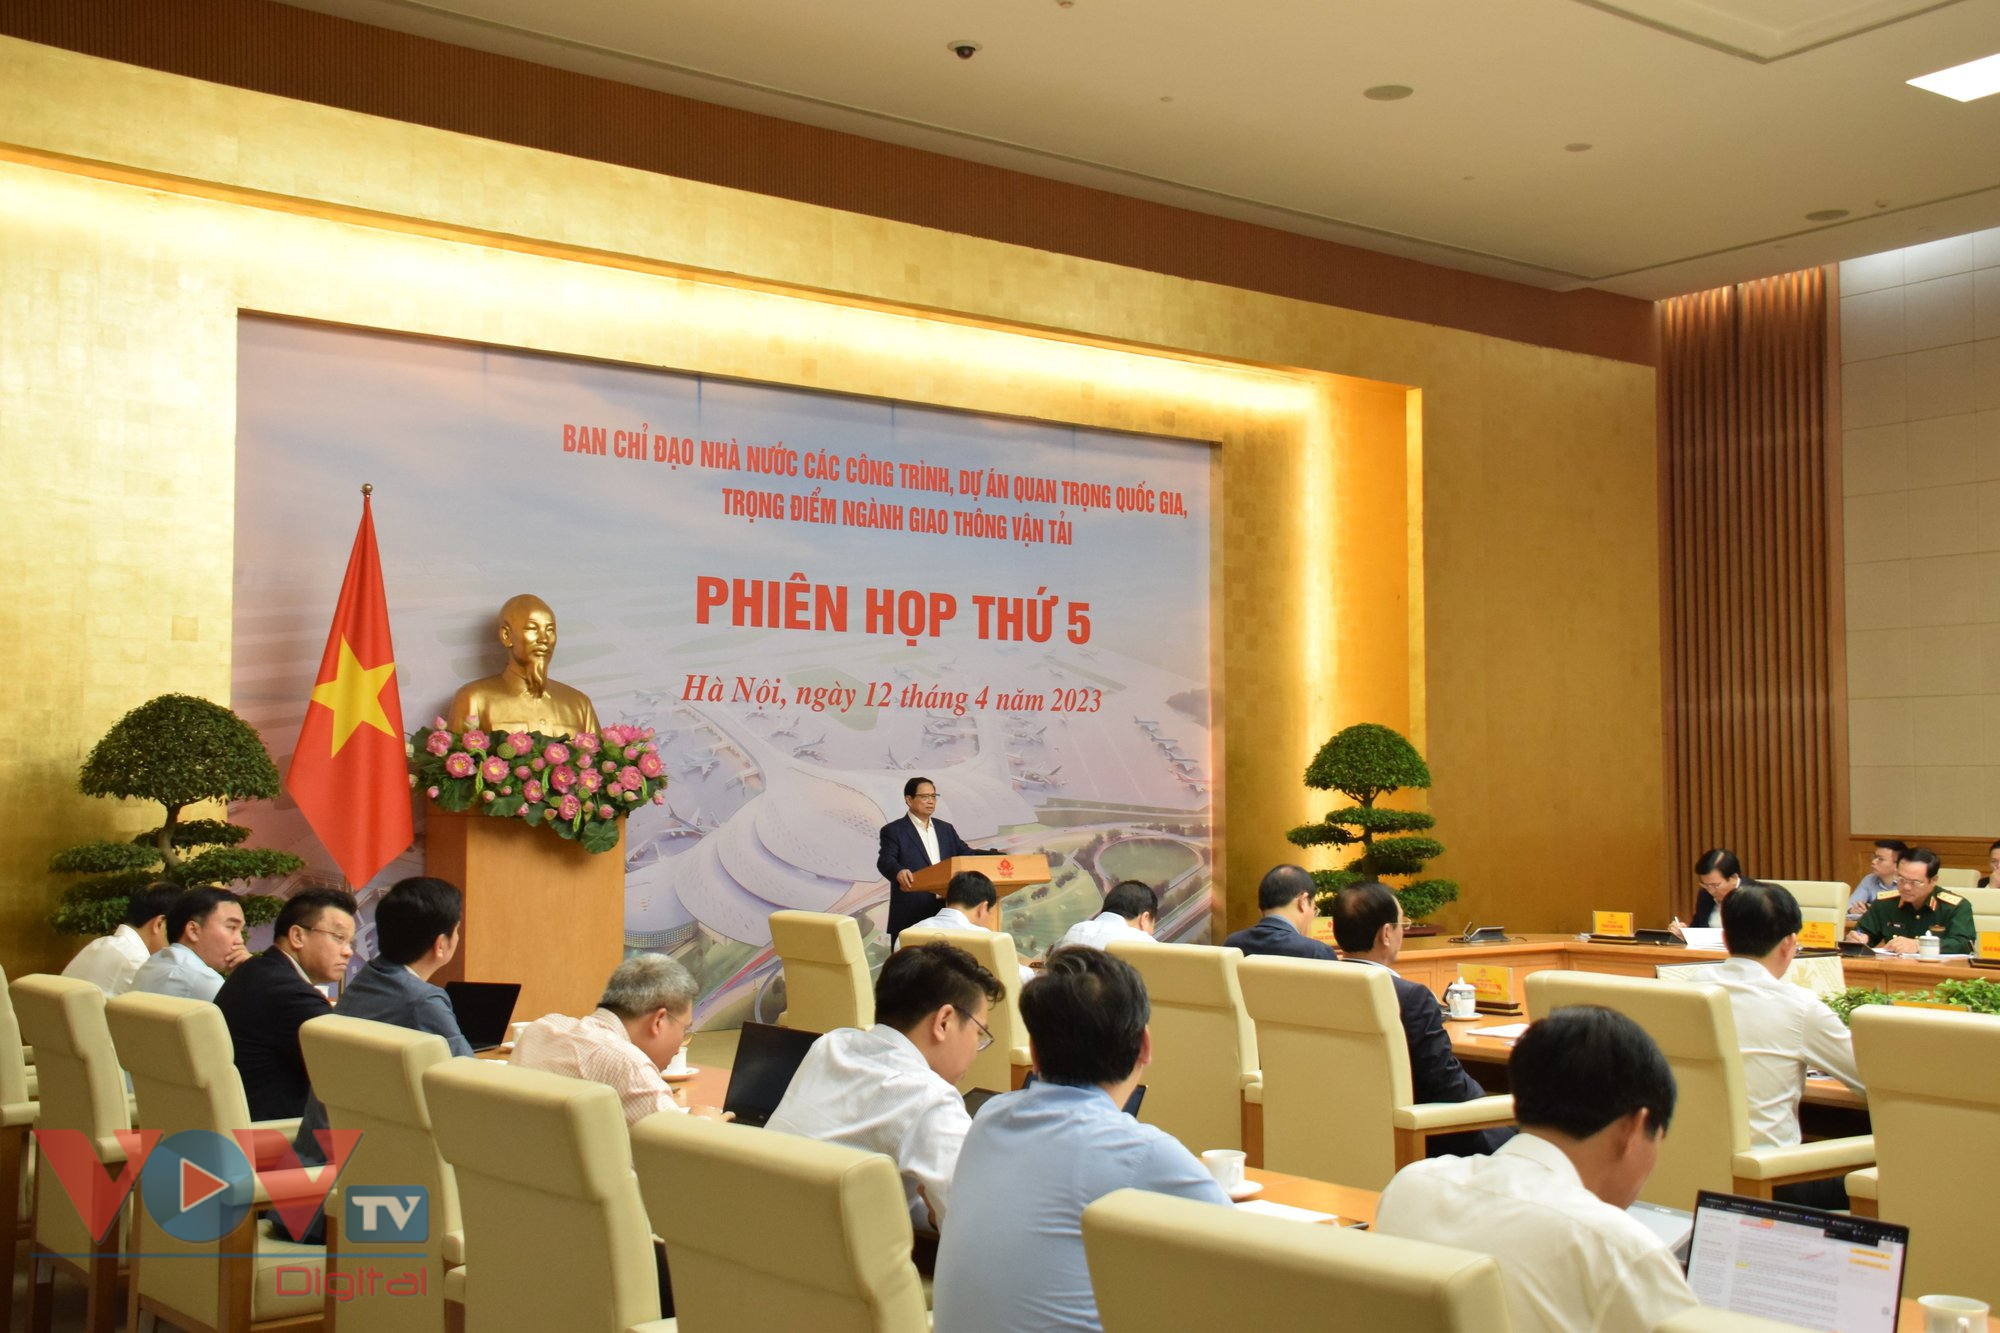 Thủ tướng Phạm Minh Chính chủ trì phiên họp thứ 5 về các dự án quan trọng quốc gia, trọng điểm ngành Giao thông vận tải - Ảnh 3.